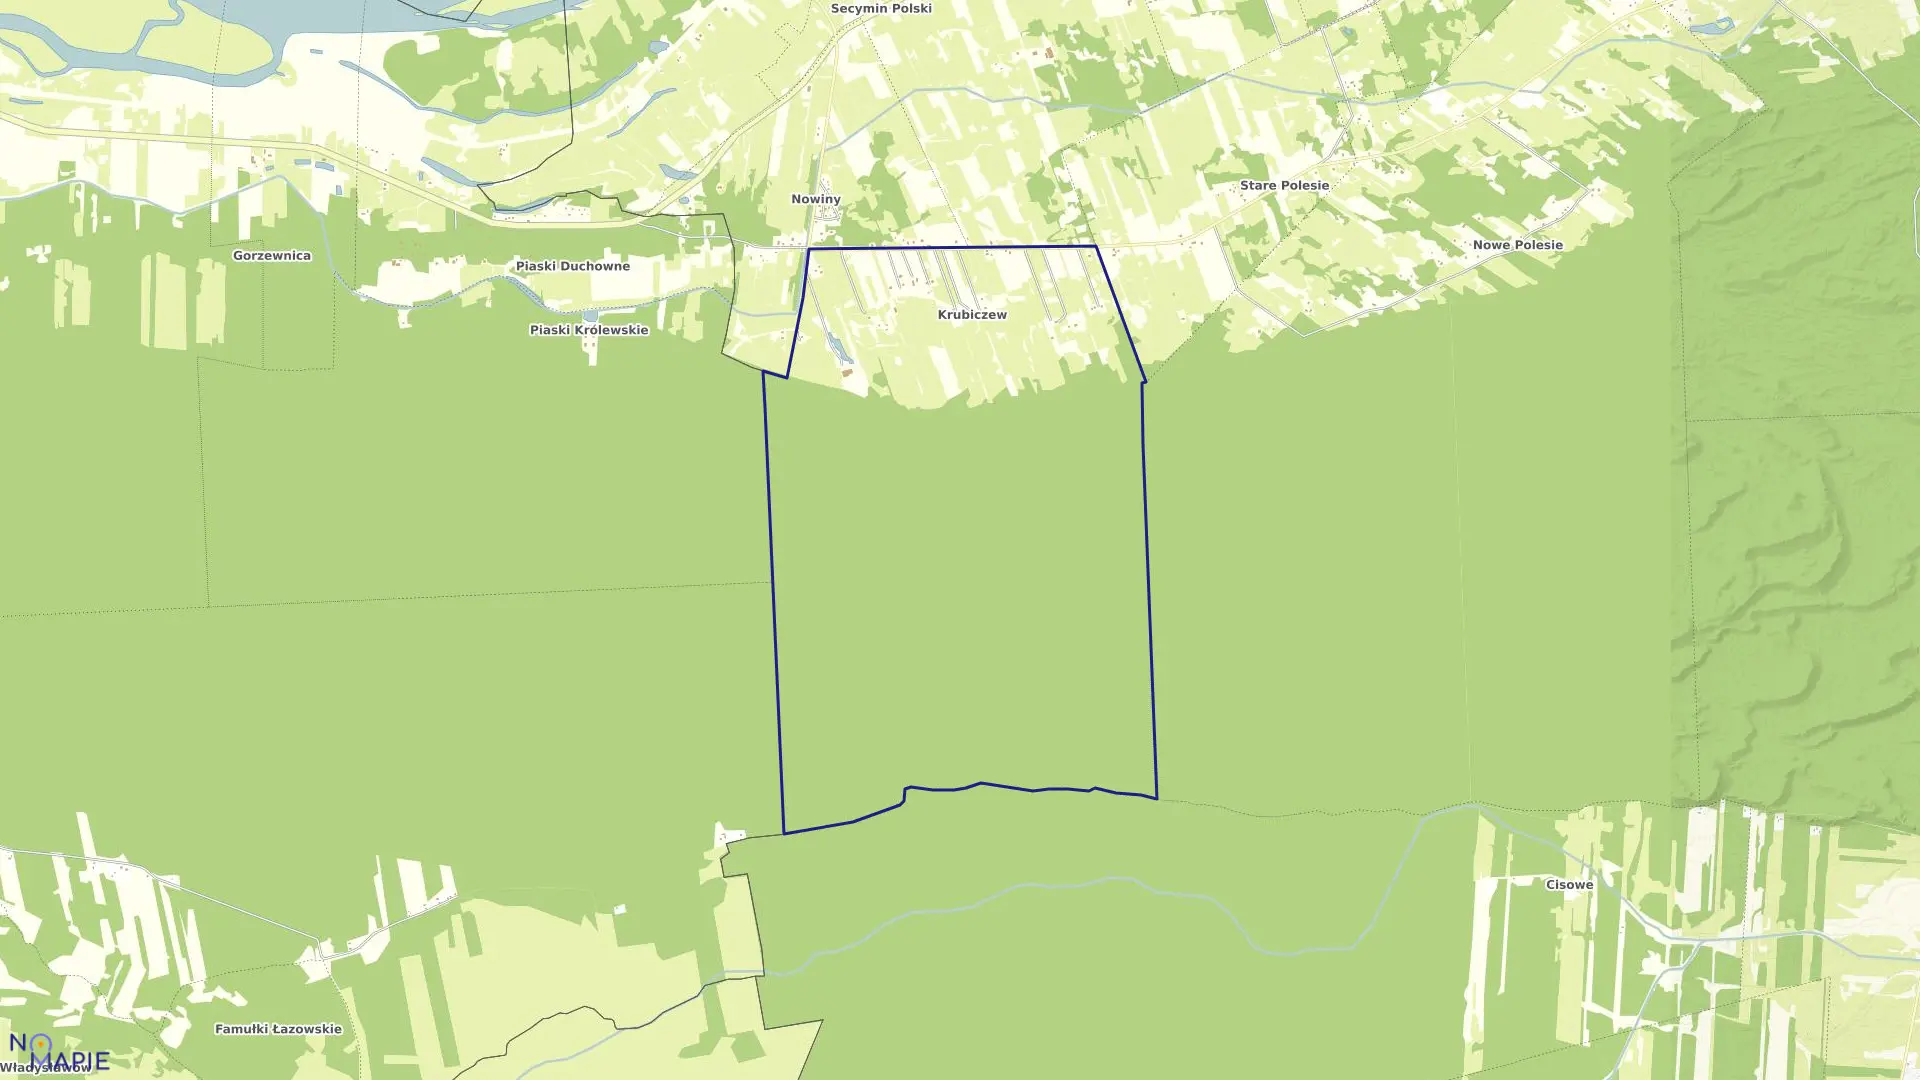 Mapa obrębu KRUBICZEW w gminie Leoncin